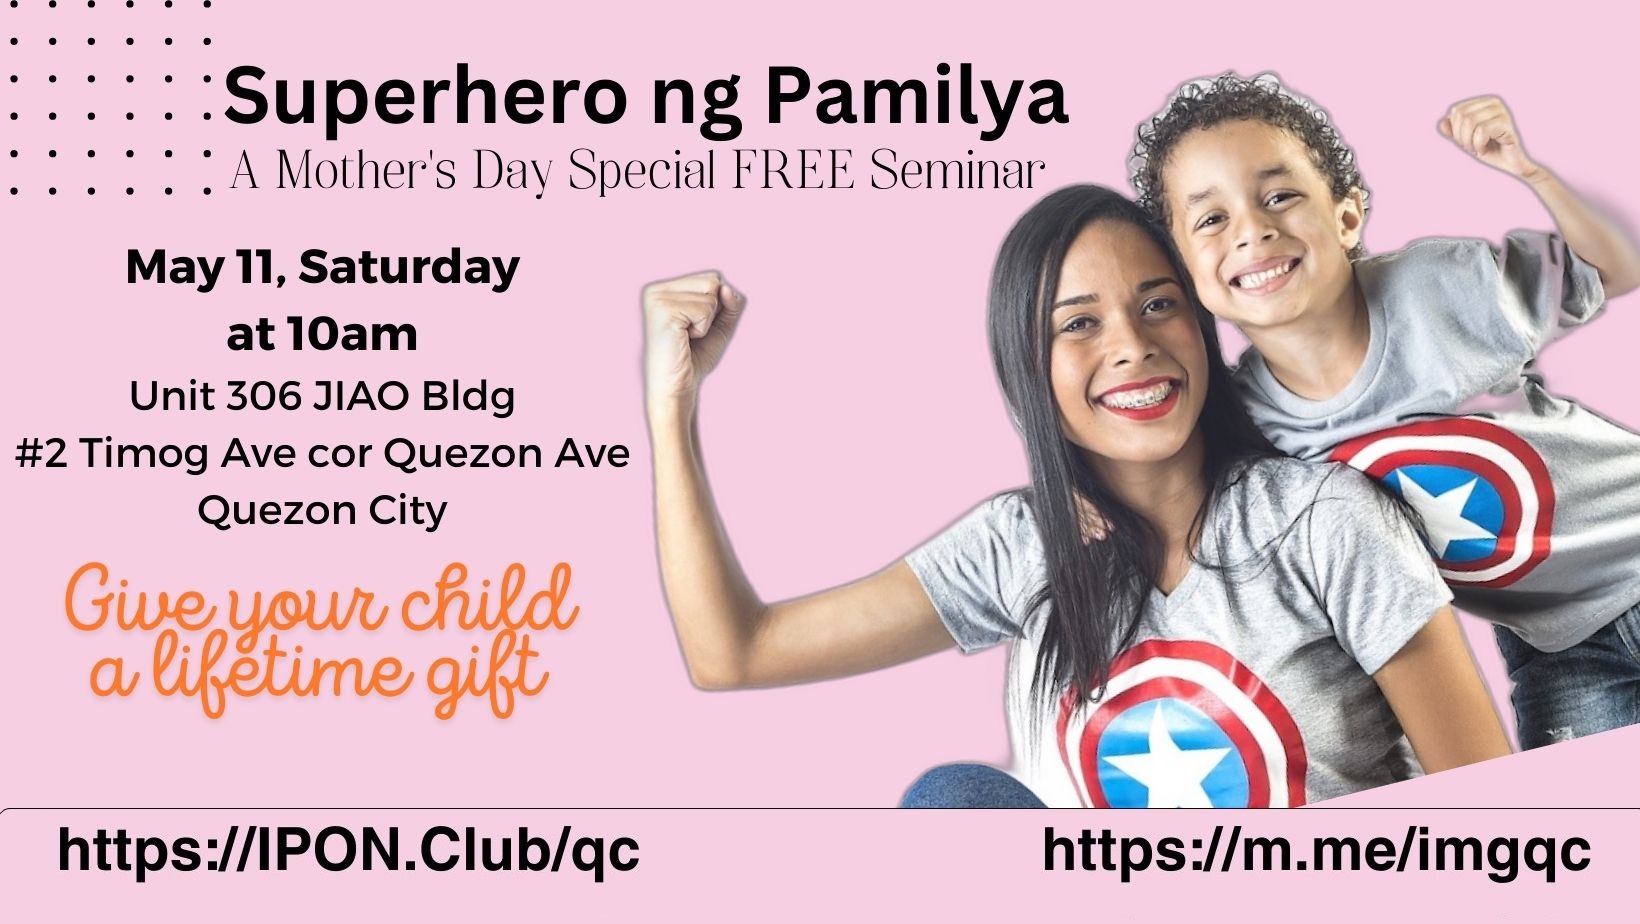 May 11 - Superhero ng Pamilya - A Mothers' Day FREE Seminars